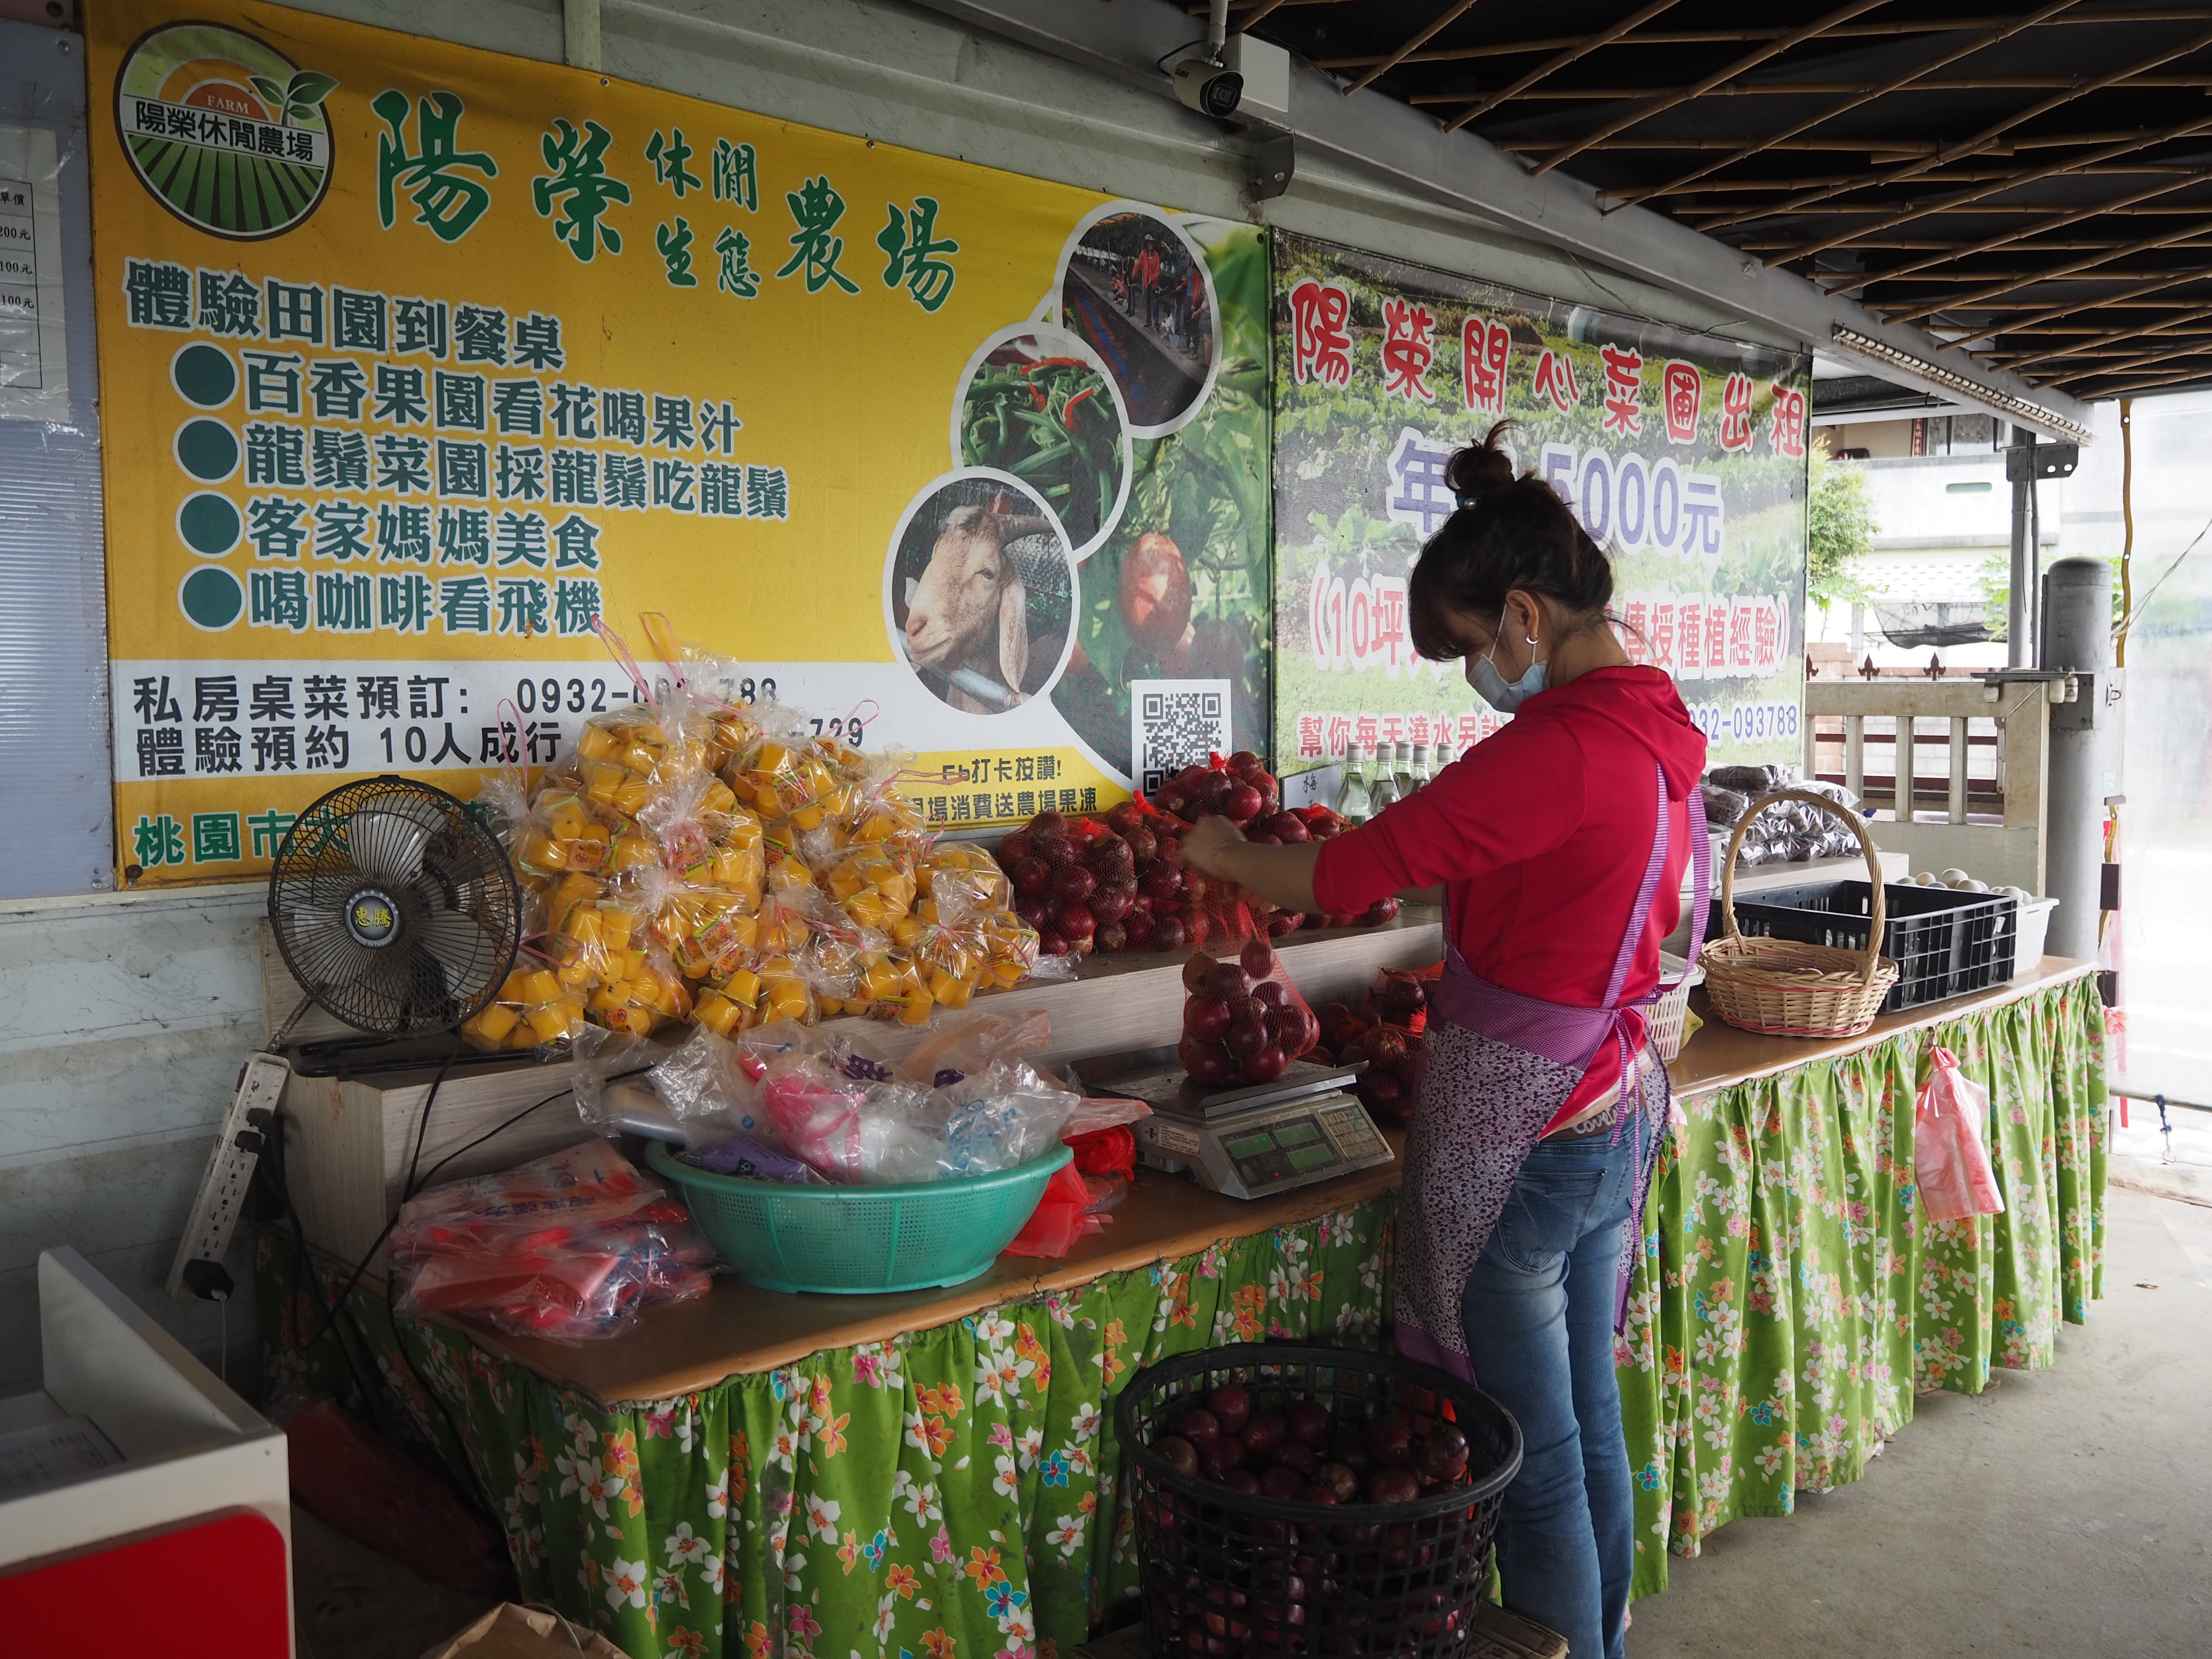 門口有當日採摘的新鮮果蔬販售。